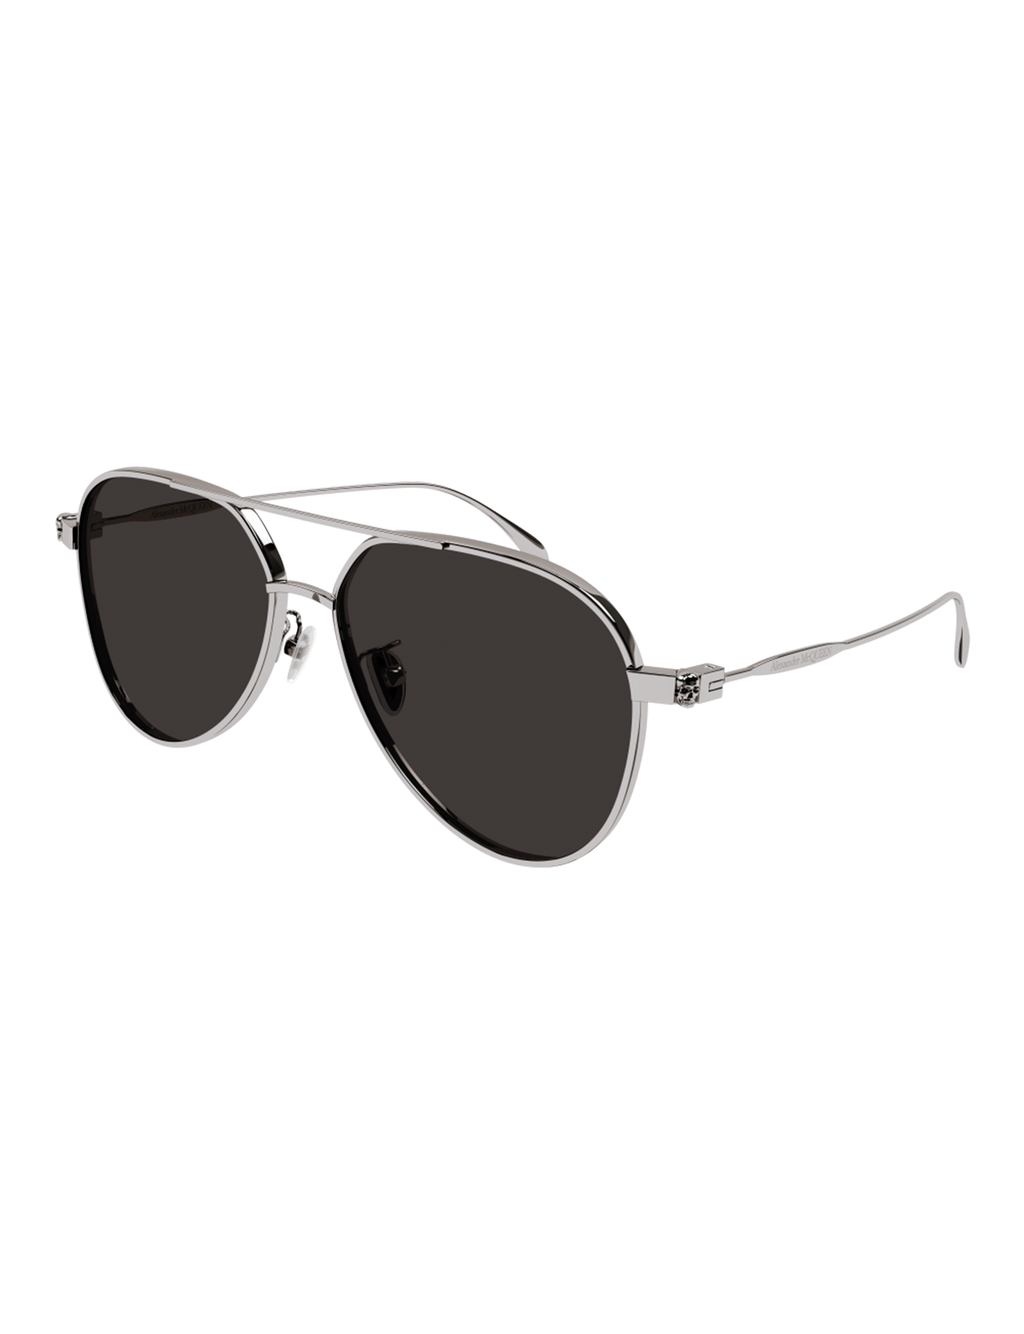 Casual Aviator Sunglasses, Silver